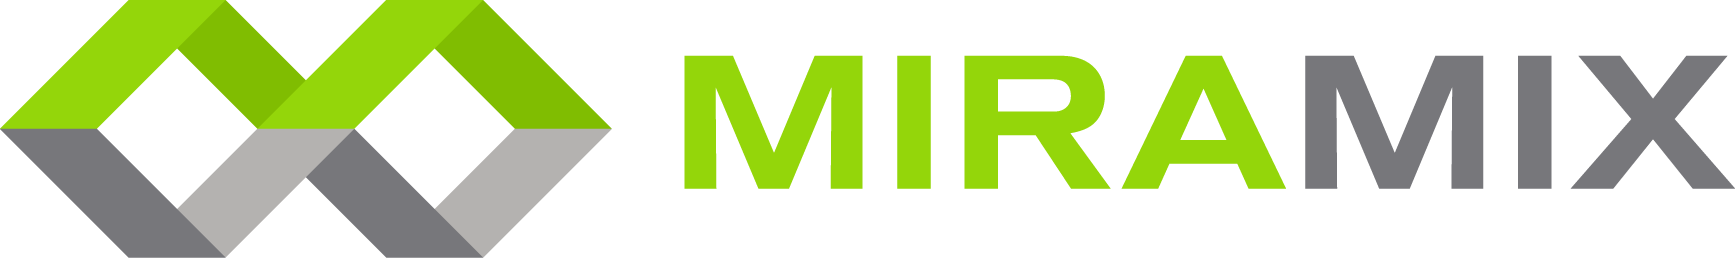 Miramix